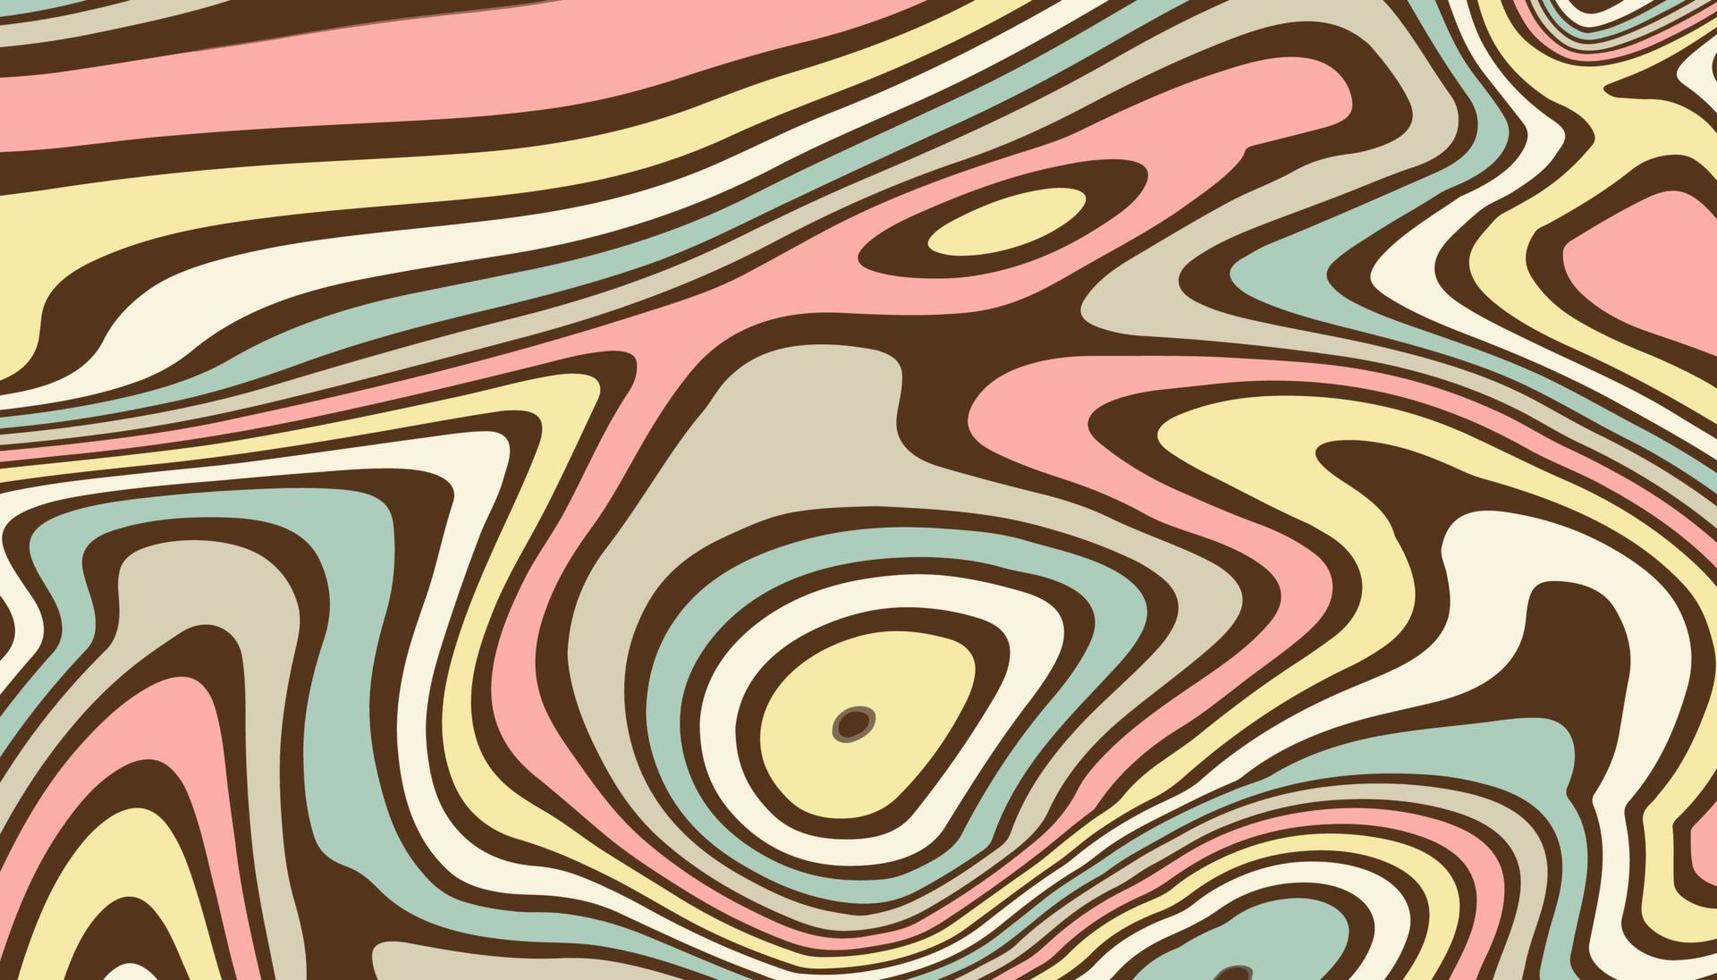 fond horizontal abstrait avec des vagues colorées. style psychédélique, illustration vectorielle tendance dans le style rétro des années 60, 70. vecteur